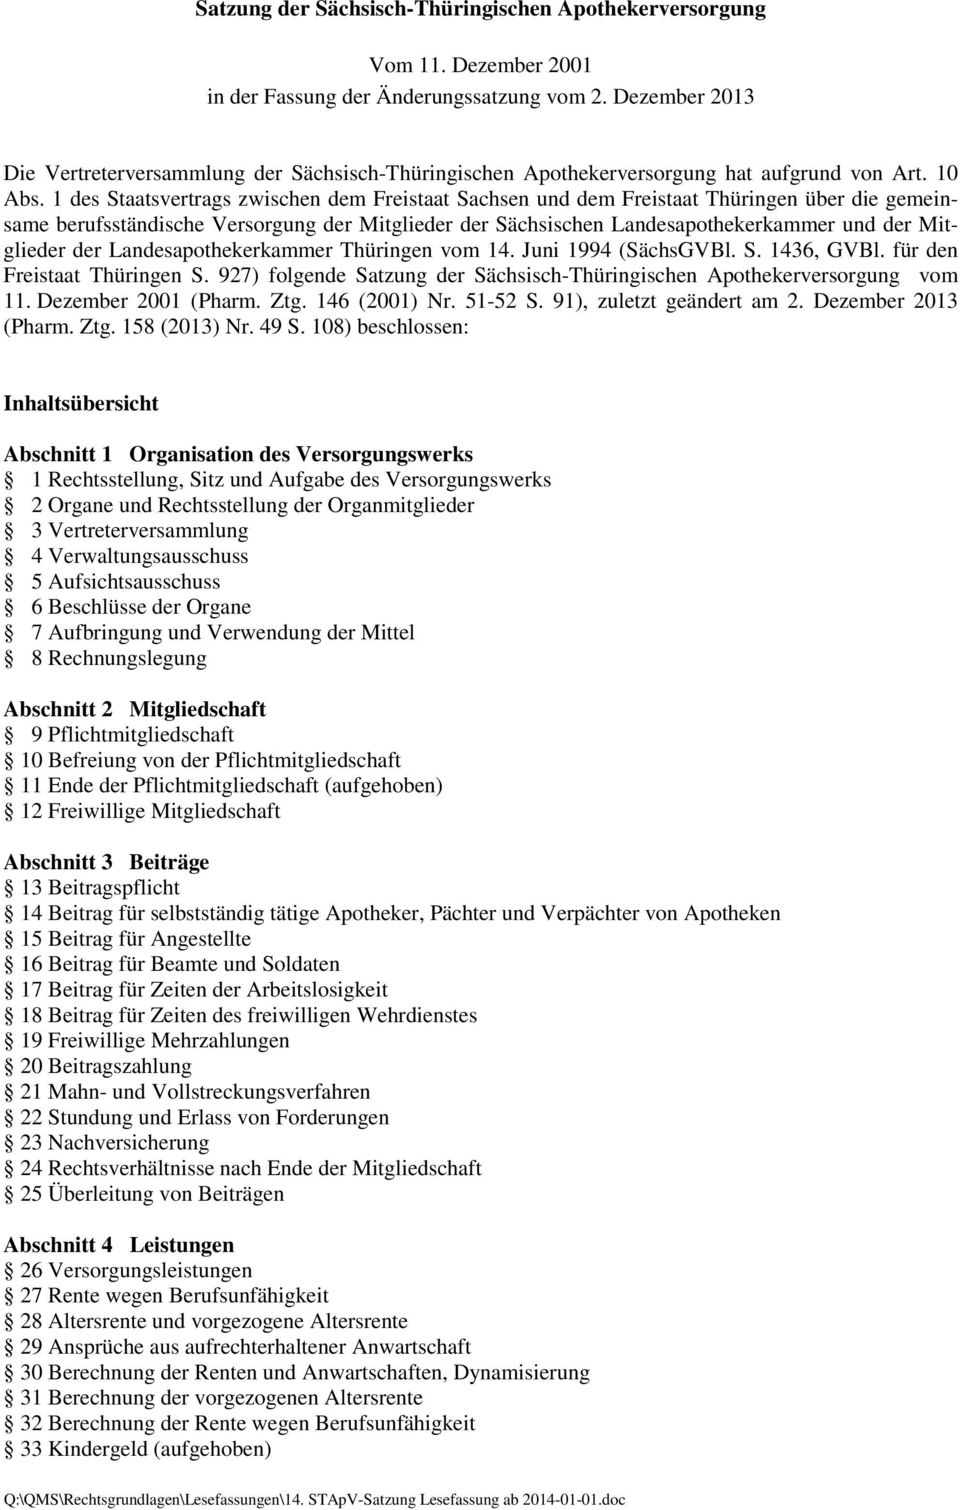 1 des Staatsvertrags zwischen dem Freistaat Sachsen und dem Freistaat Thüringen über die gemeinsame berufsständische Versorgung der Mitglieder der Sächsischen Landesapothekerkammer und der Mitglieder